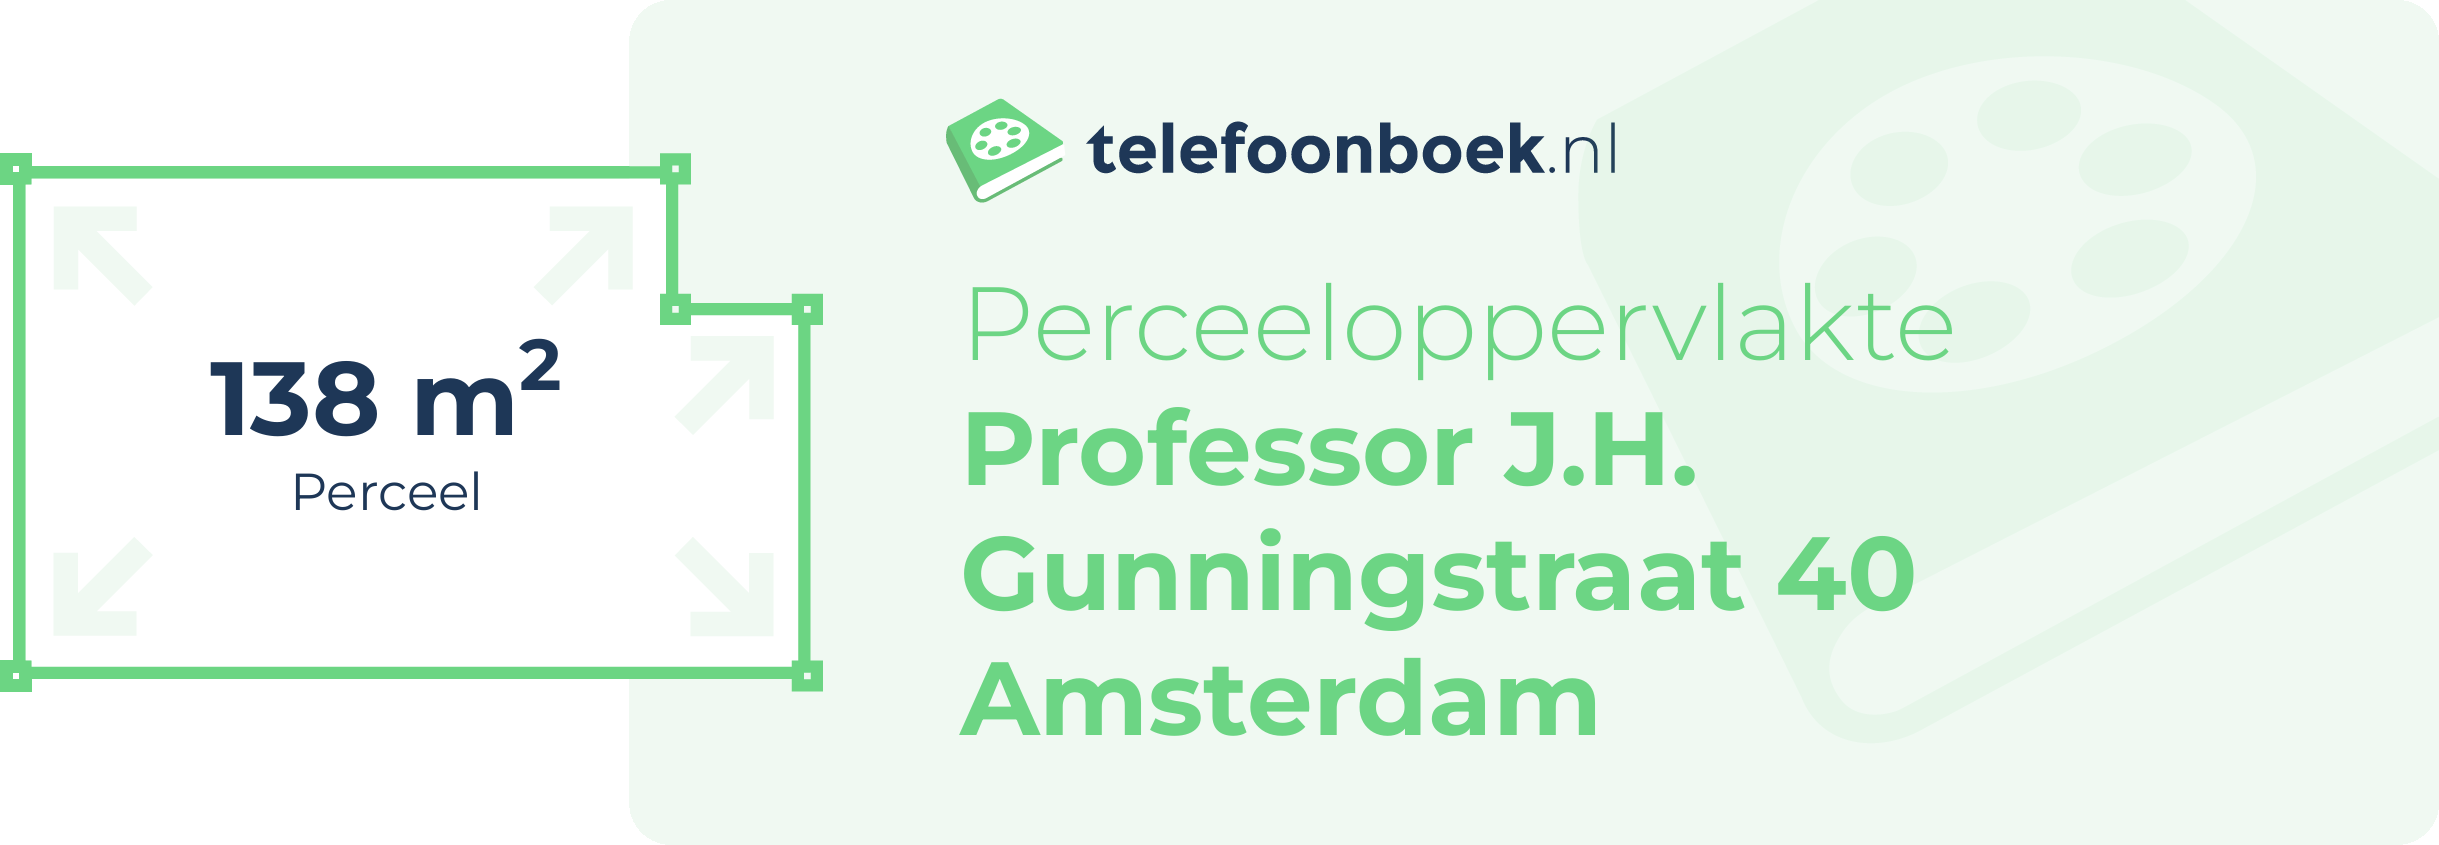 Perceeloppervlakte Professor J.H. Gunningstraat 40 Amsterdam